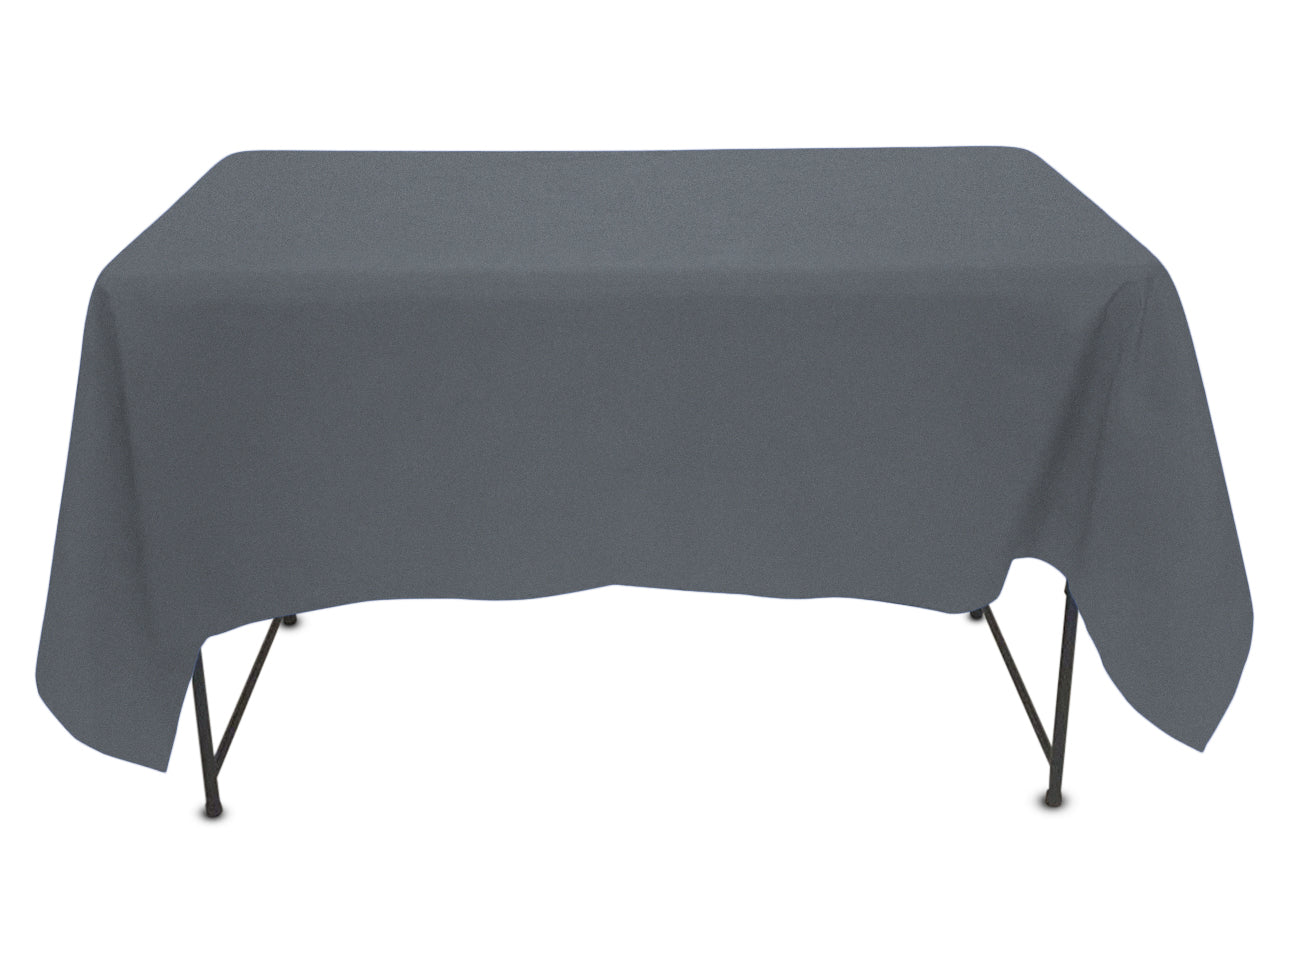 Unique Nappe de table rectangulaire solide en plastique blanc, 54x108 - 1  ea